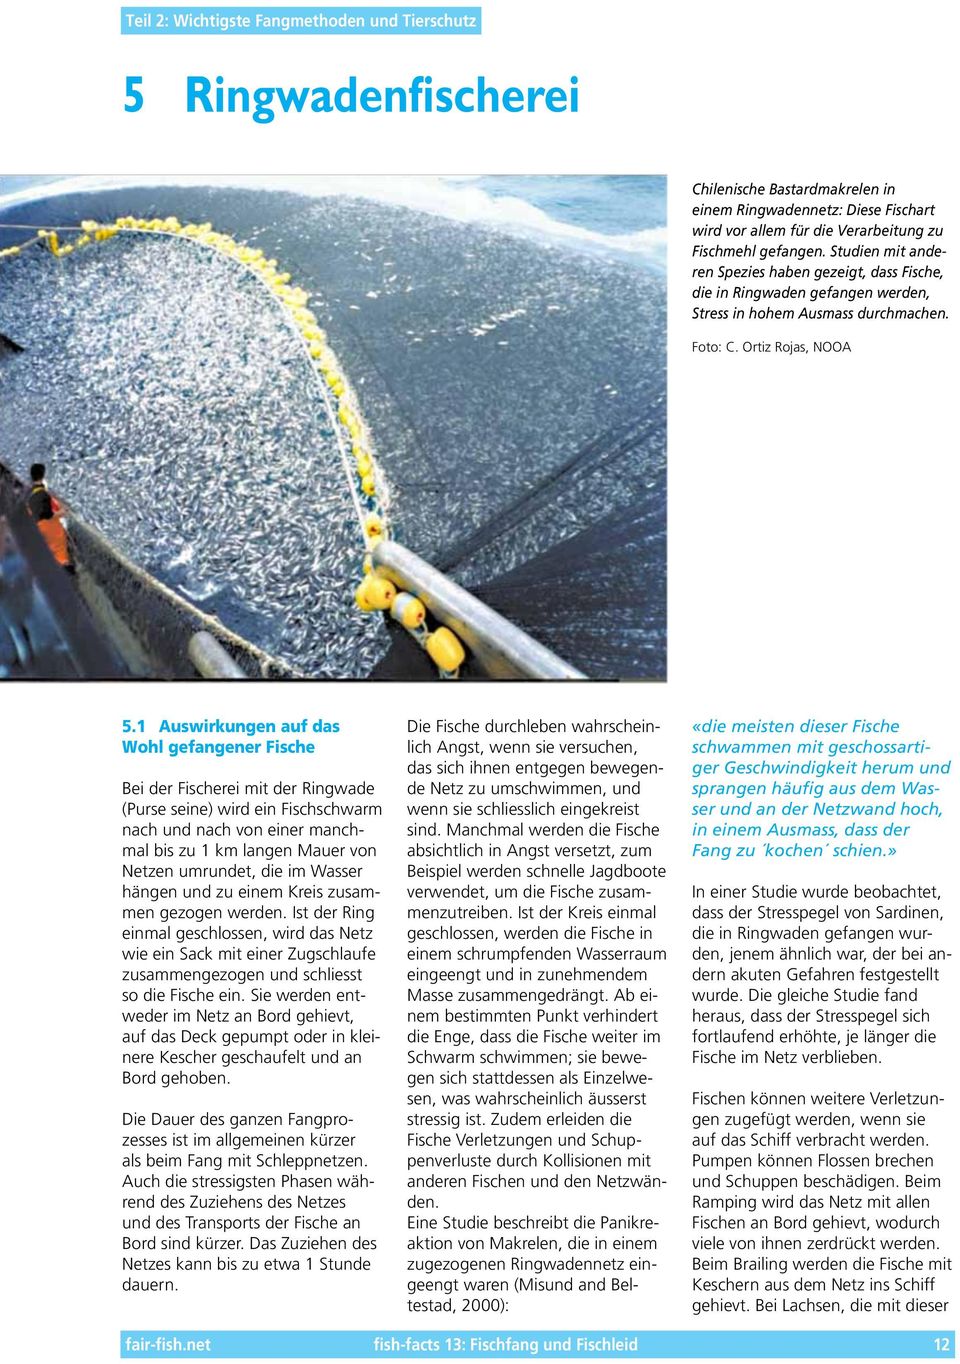 1 Auswirkungen auf das Wohl gefangener Fische Bei der Fischerei mit der Ringwade (Purse seine) wird ein Fischschwarm nach und nach von einer manchmal bis zu 1 km langen Mauer von Netzen umrundet, die